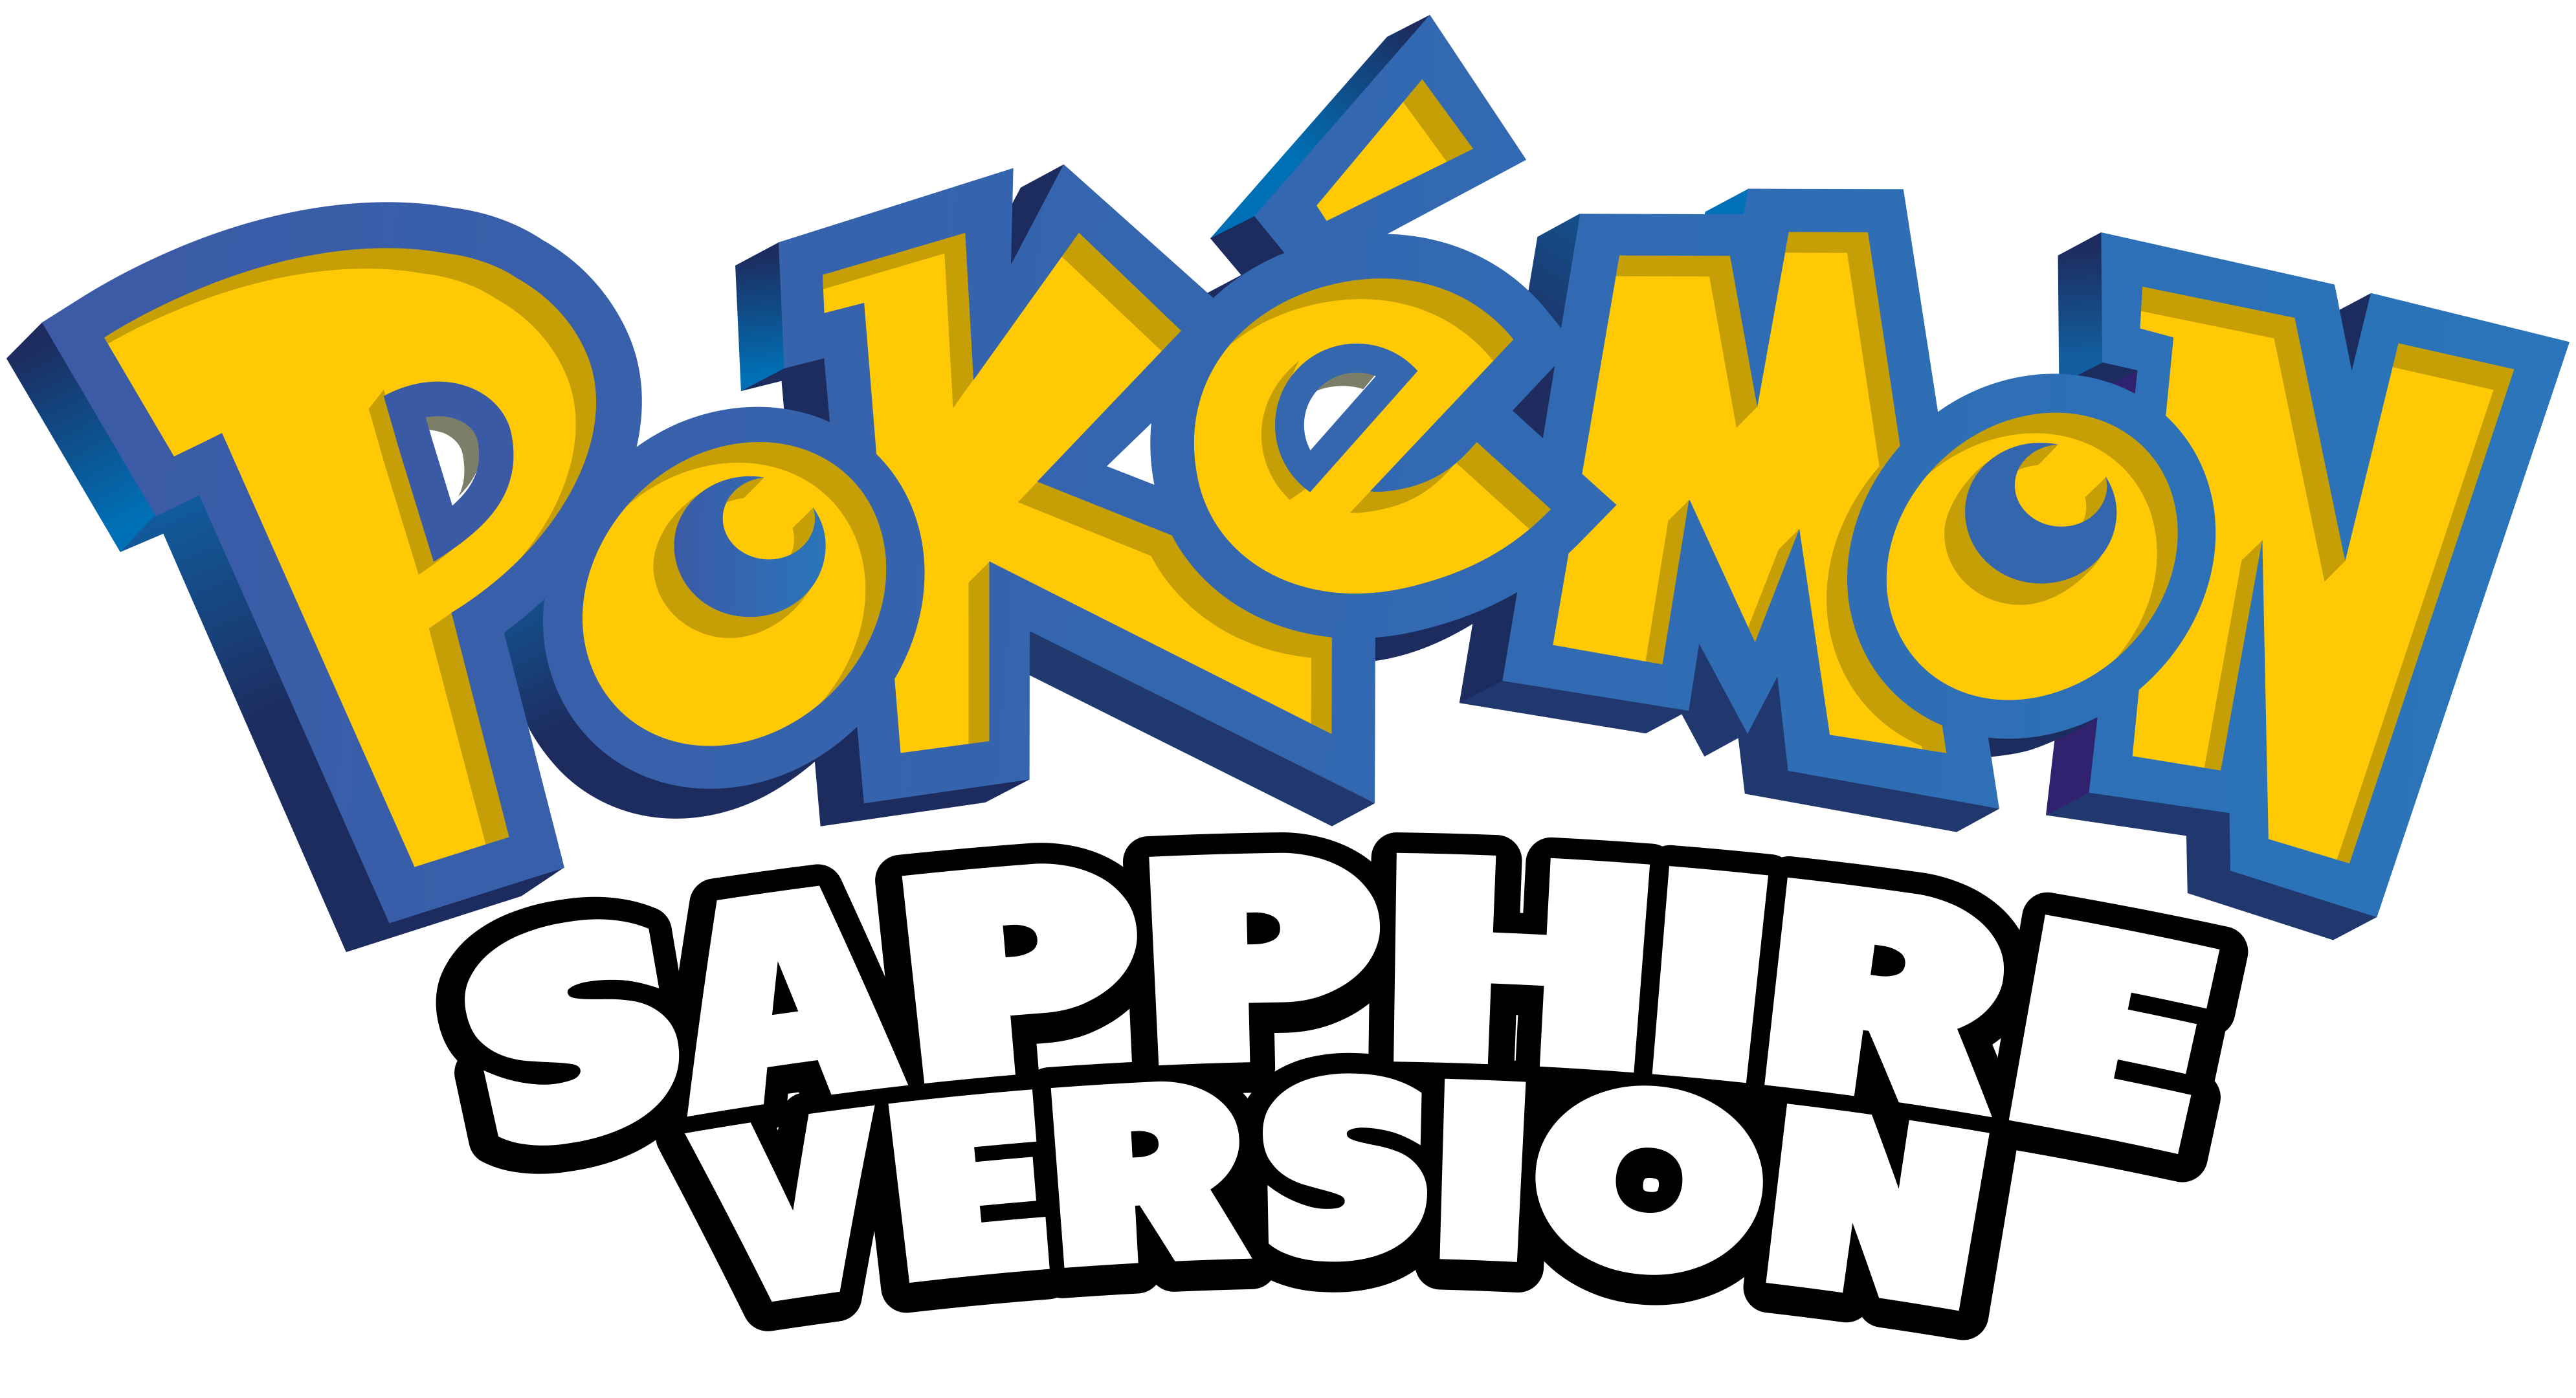 Pokémon Sapphire Version Details - LaunchBox Games Database